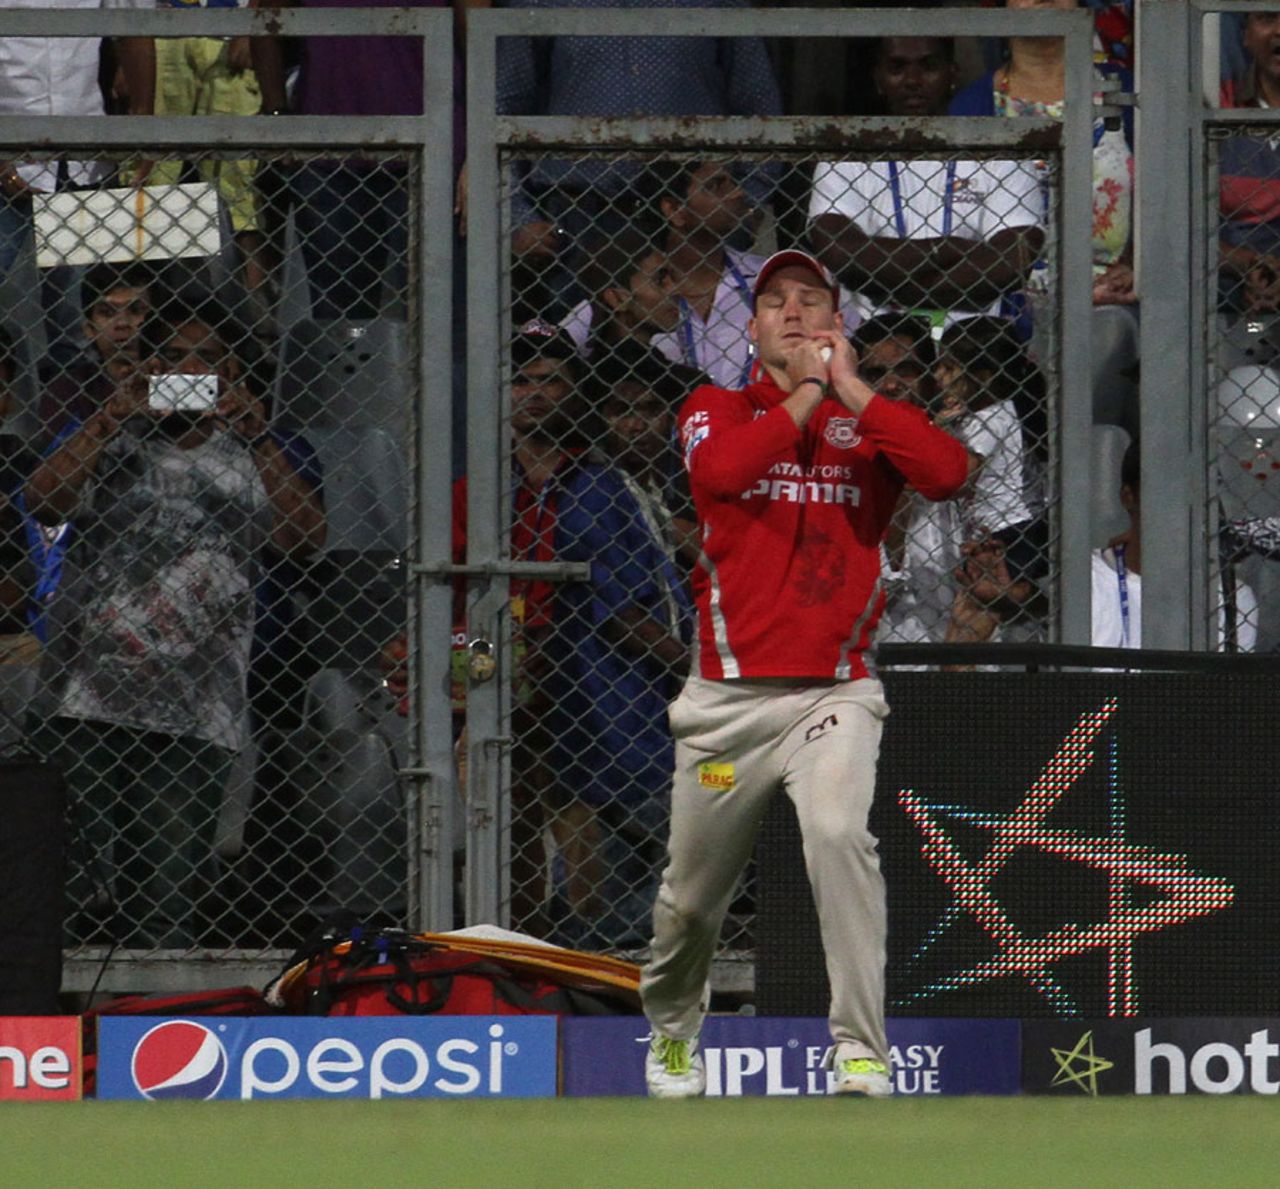 David Miller holds on to a catch from Kieron Pollard, Mumbai Indians v Kings XI Punjab, IPL 2015, Mumbai, April 12, 2015